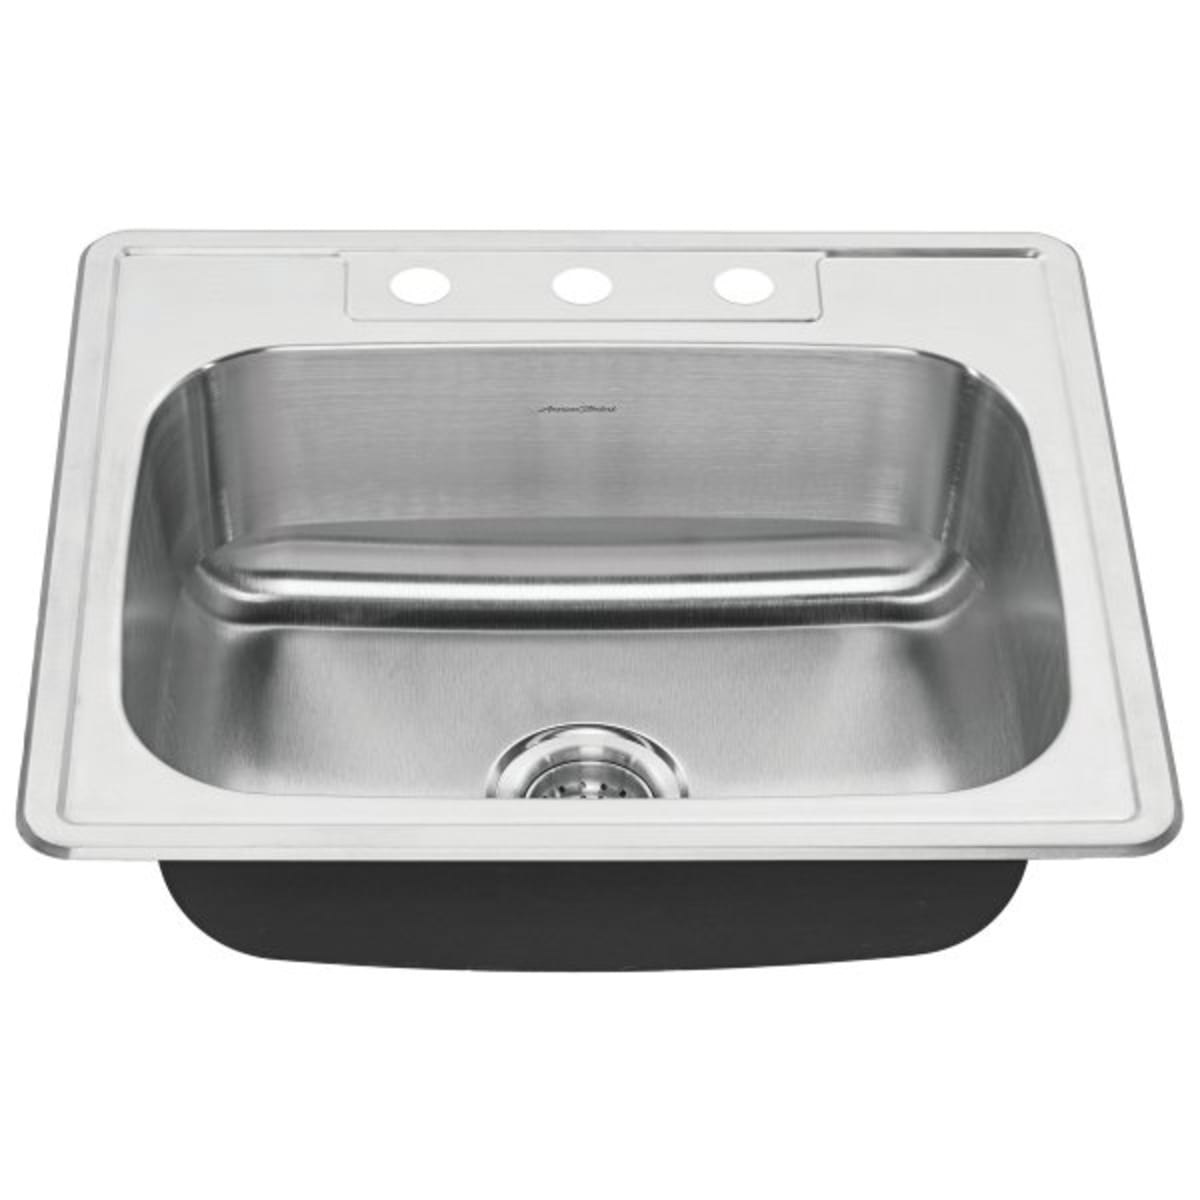 Stainless Steel Sink 42 3 4 Triple Bowl Undermount Kitchen Sink